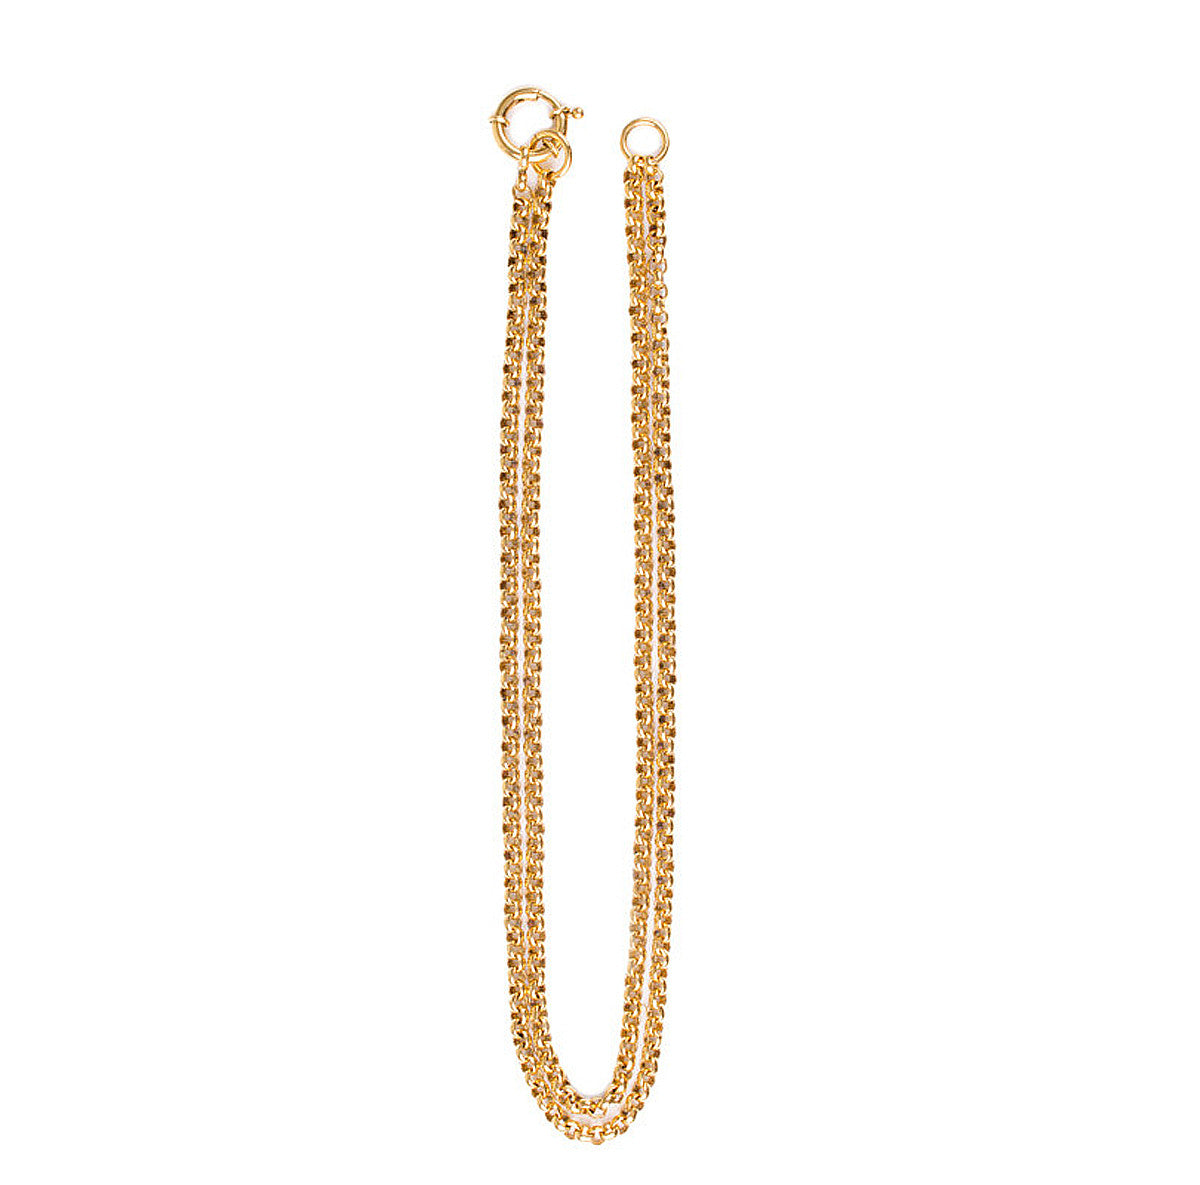 Adjustable Charm Holder Necklace - Gold